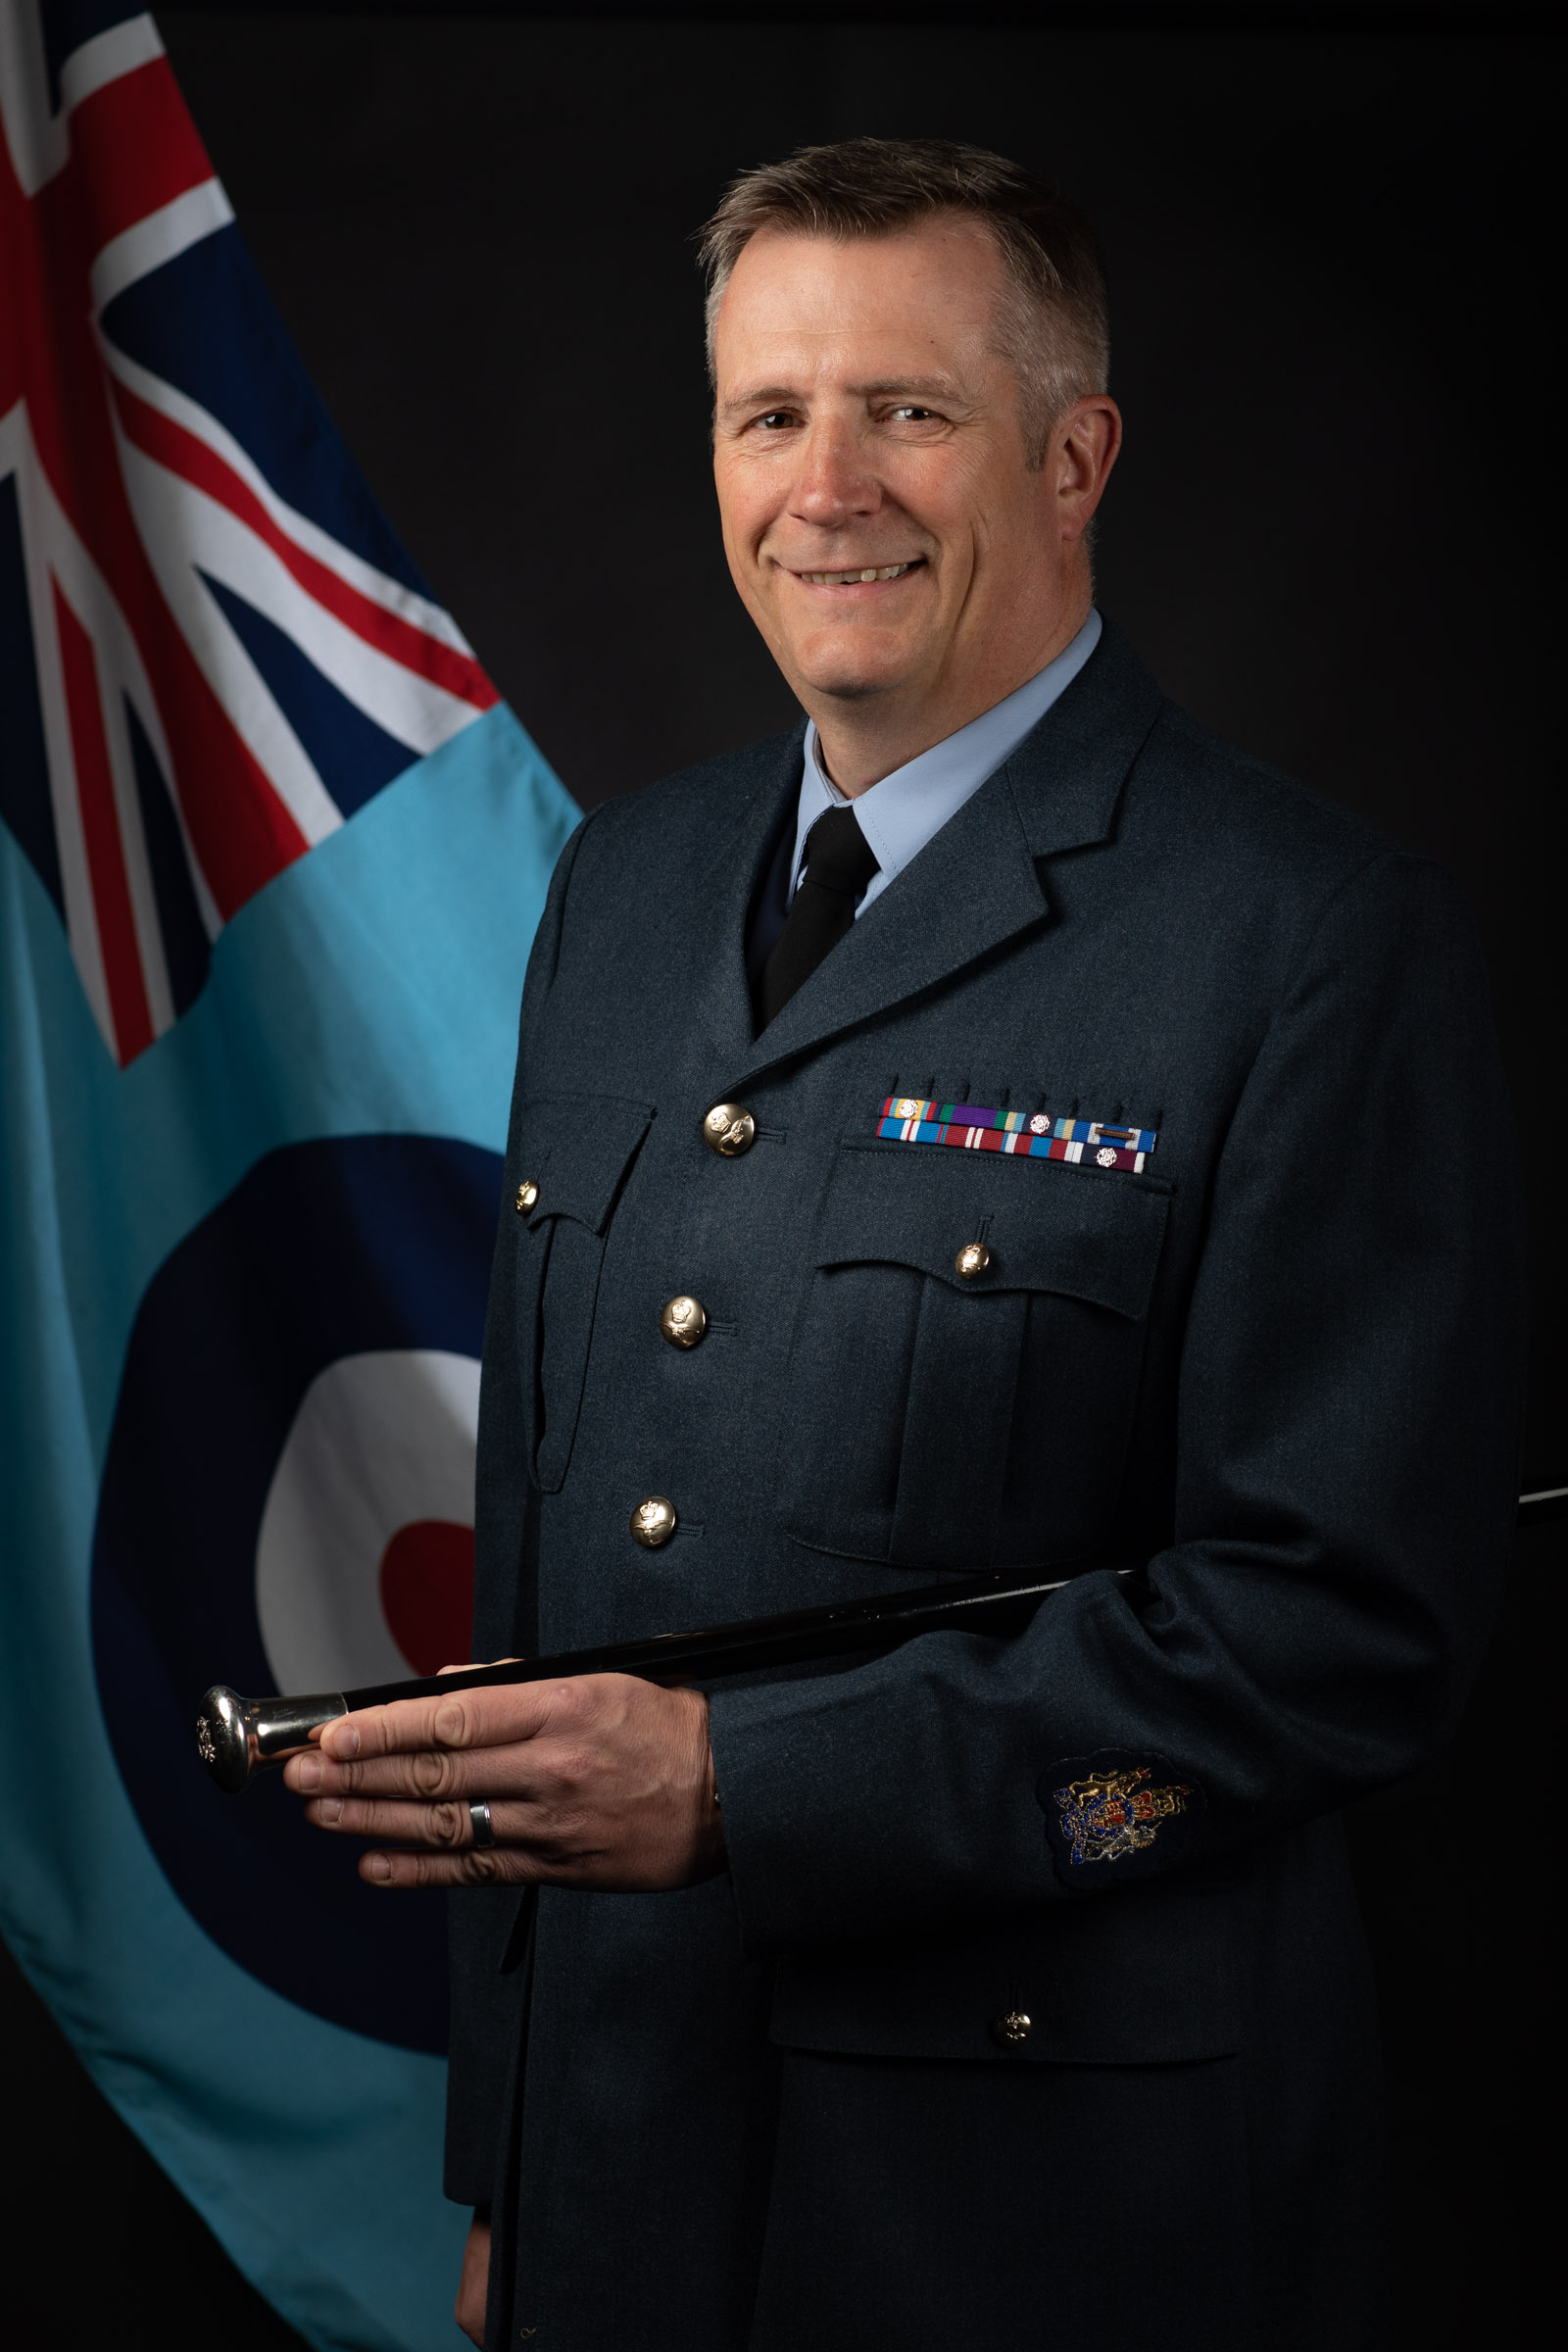 Warrant Officer Darren Rose, Station Warrant Officer at RAF Wittering